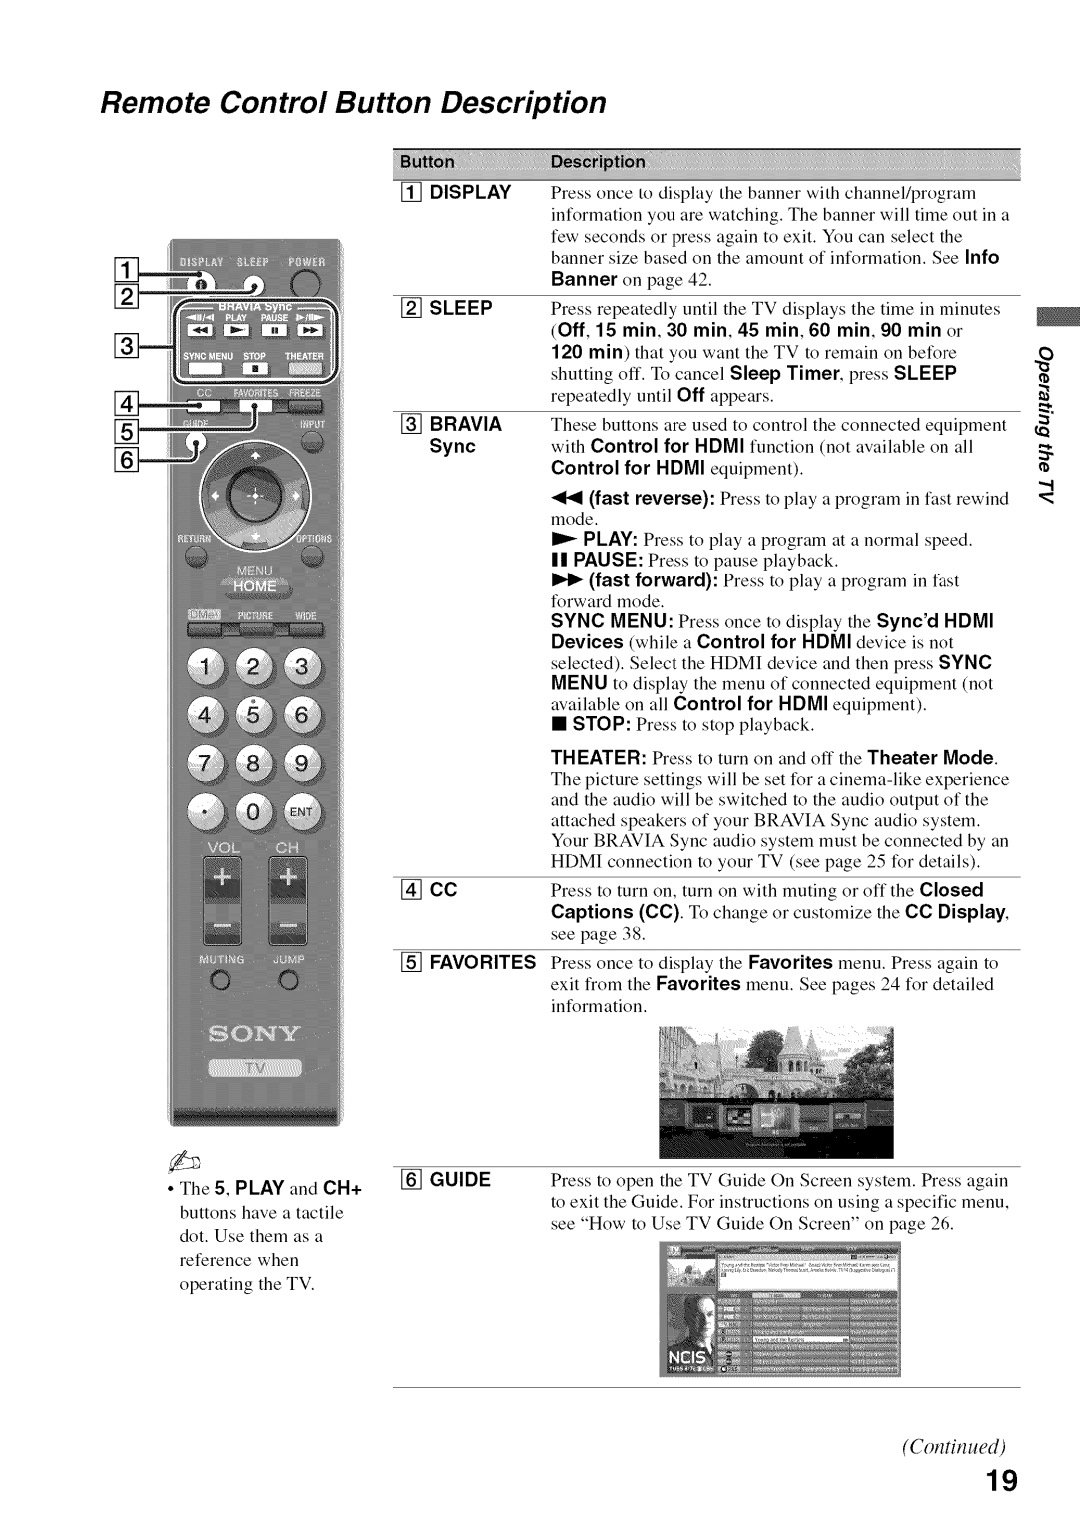 Sony KDL52V4100 Remote Control Button Description, Off, 15 min, 30 min, 45 min, 60 min, 90 min or, Bravia, Favorites 